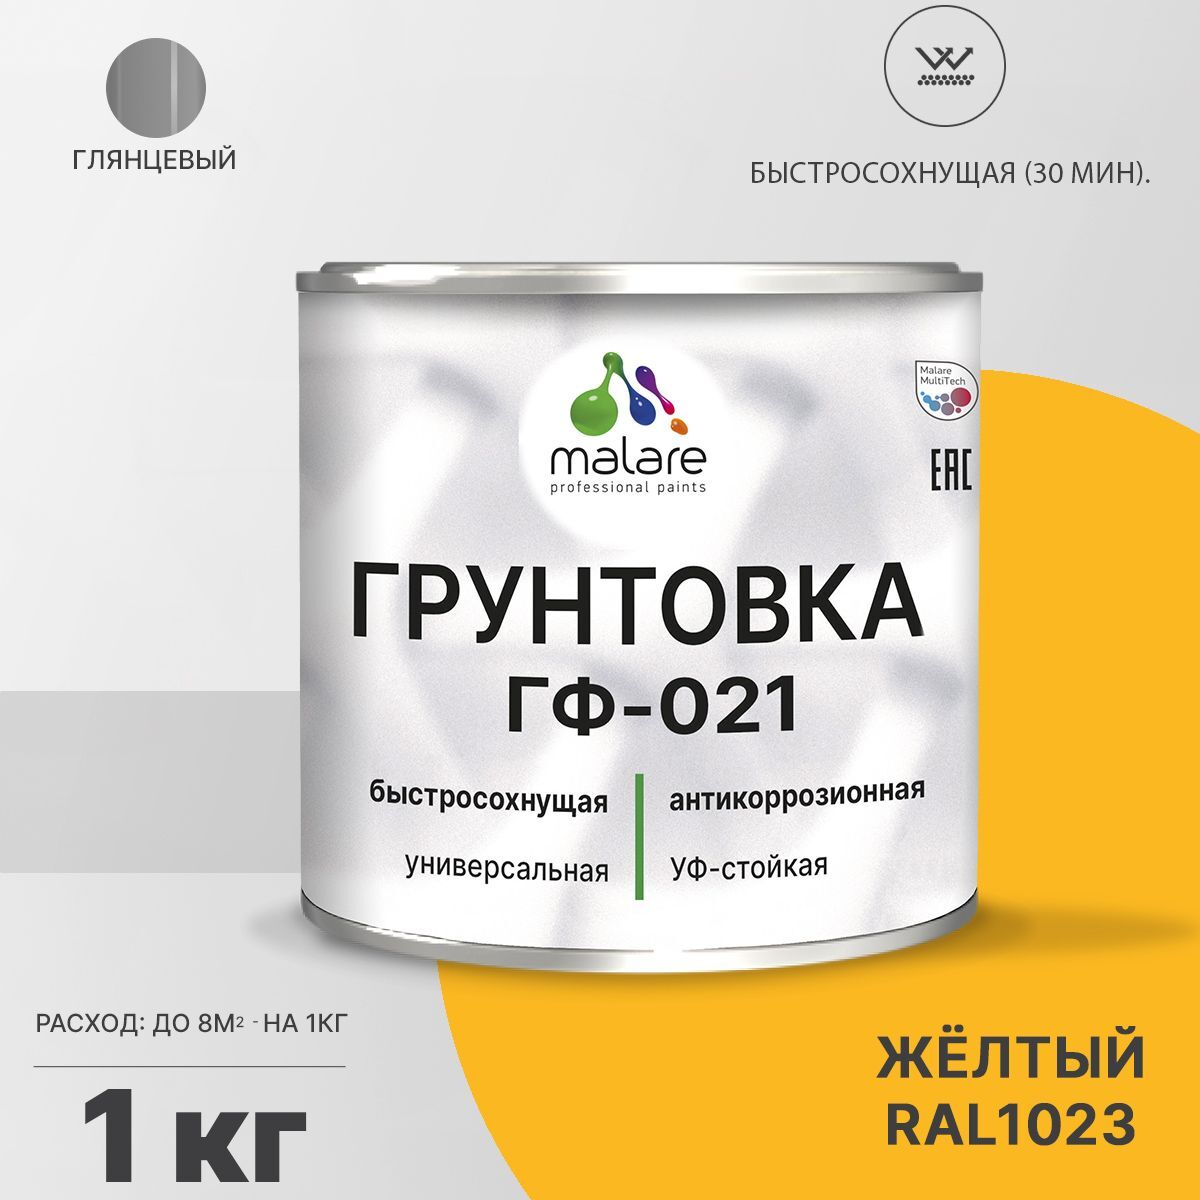 Грунтовка Malare ГФ-021 антикоррозионная Алкидная, Глифталевая, RAL 1023, 1 кг 1